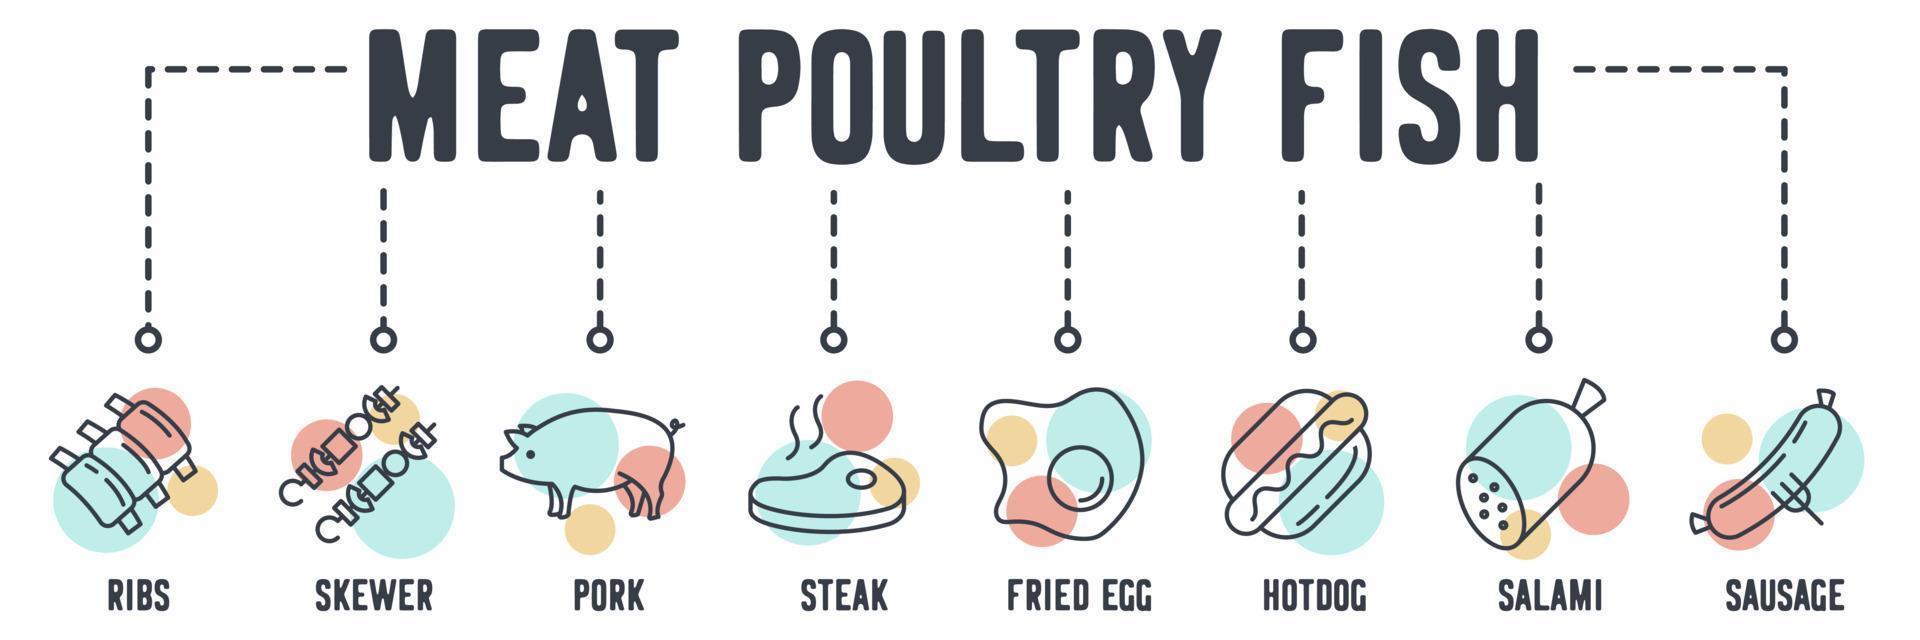 Meat, poultry, fish banner web icon. ribs, skewer, pork, steak, fried egg, hotdog, salami, sausage vector illustration concept.